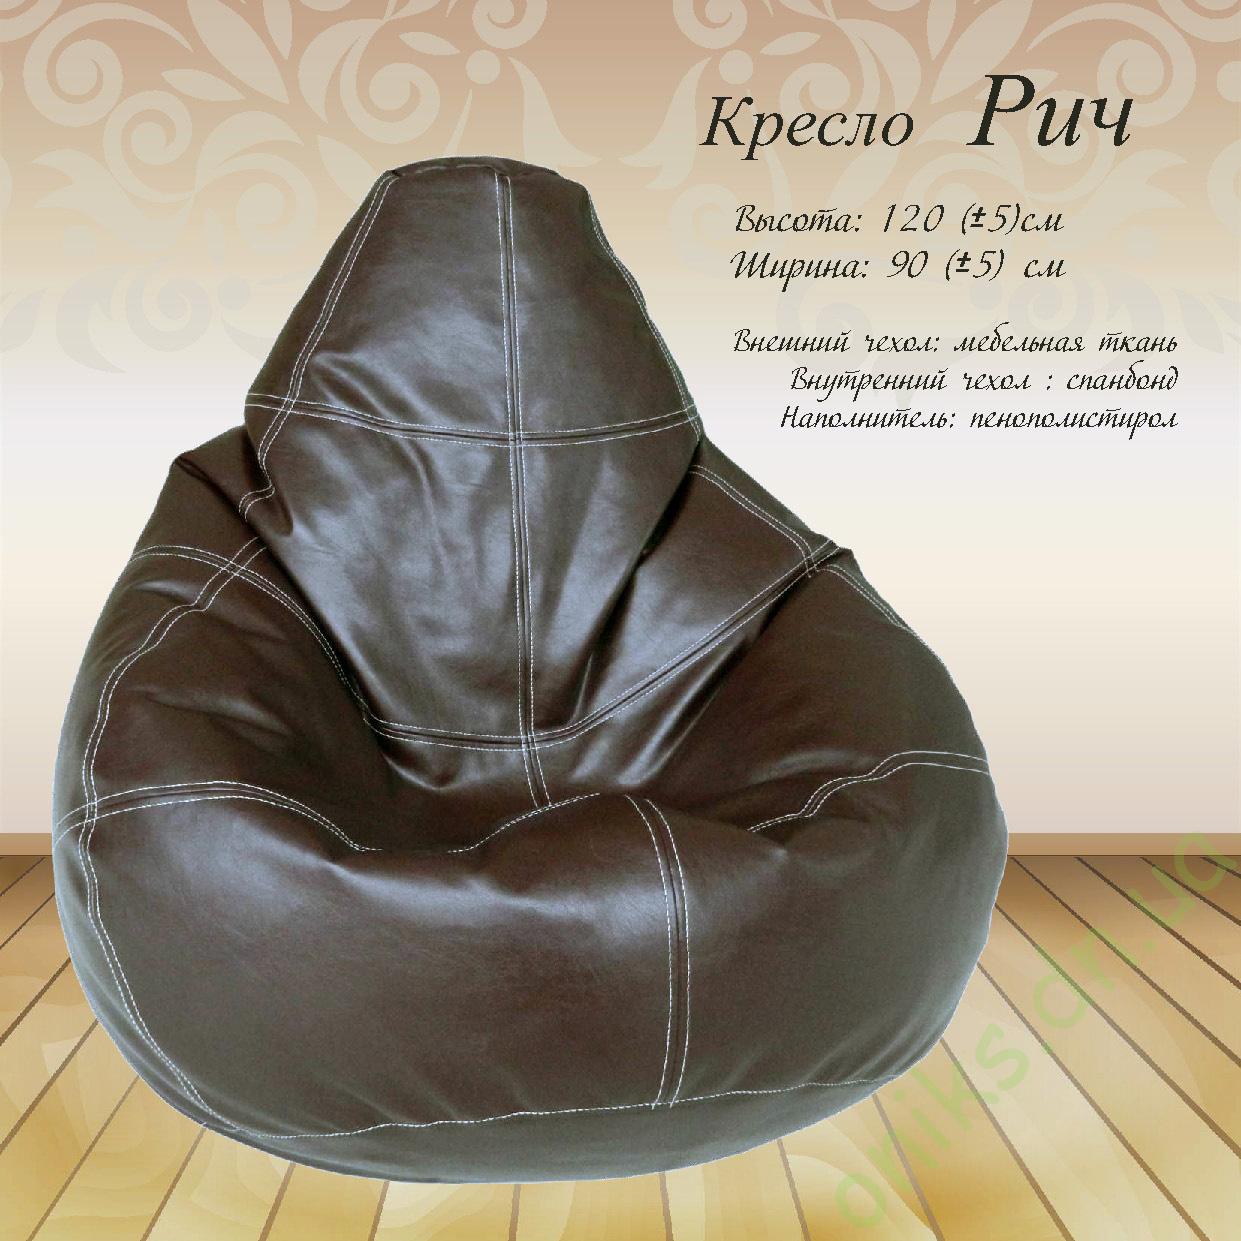 Купить кресло Рич в Донецке